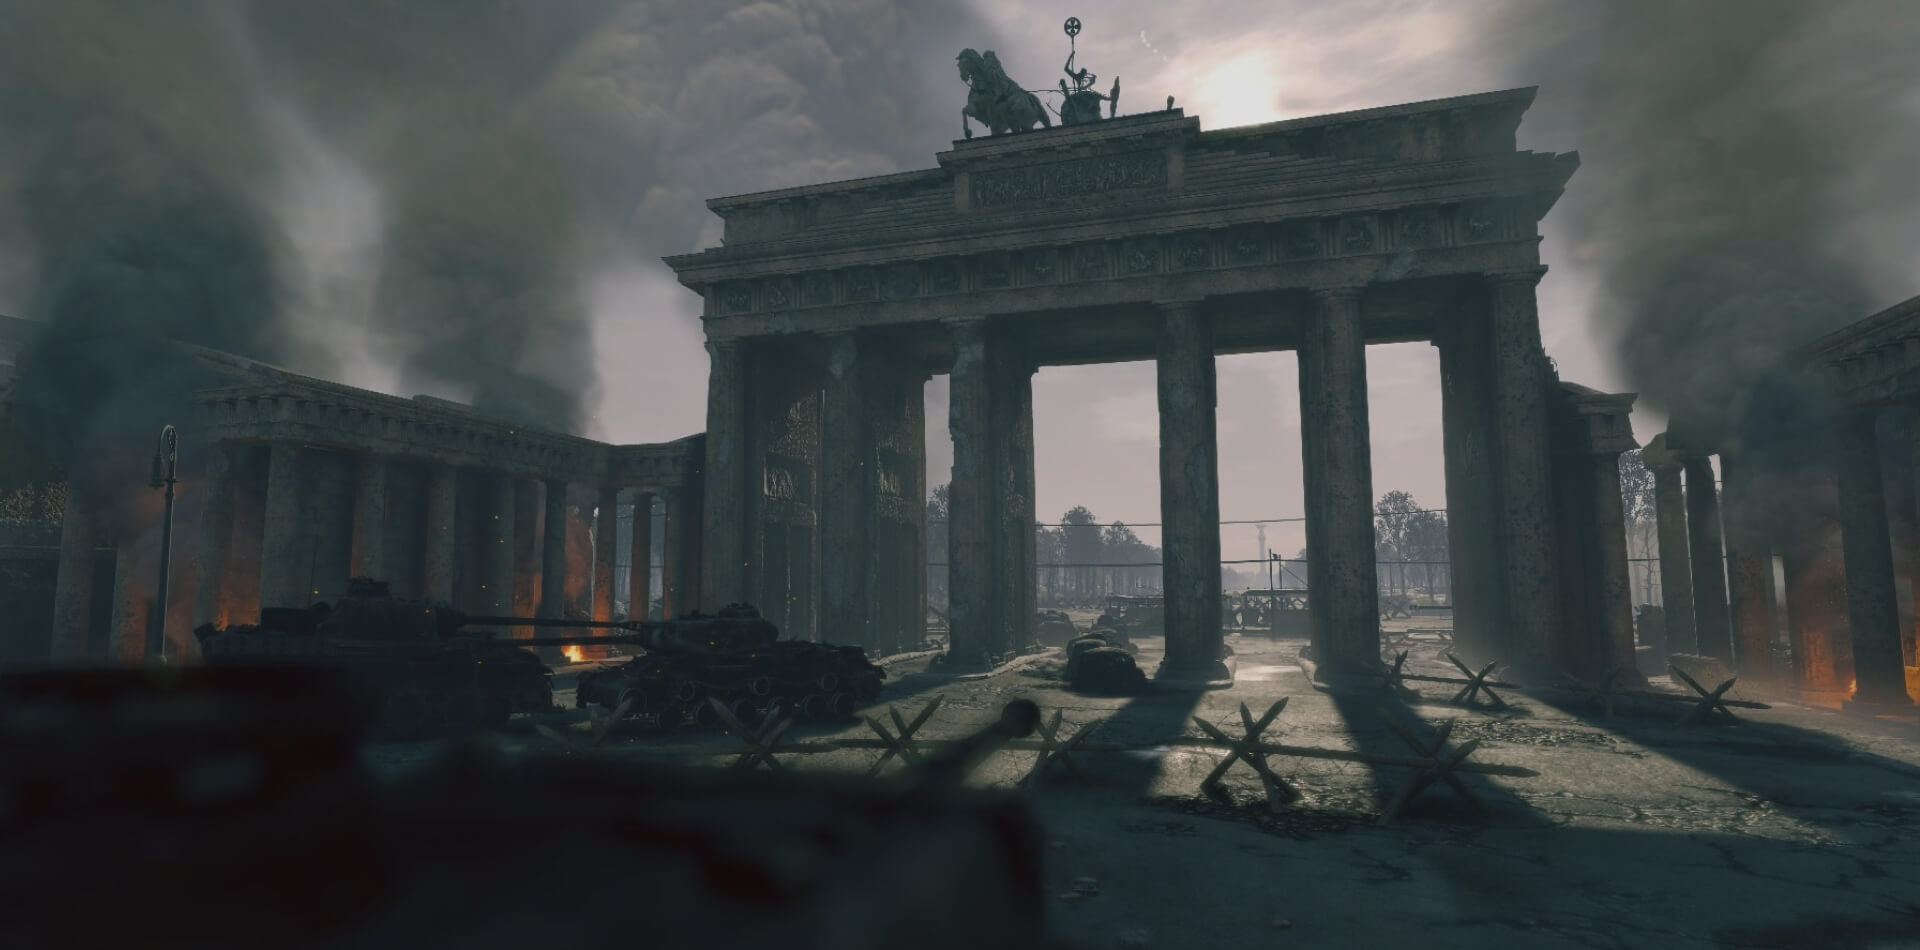 Schlacht um Berlin